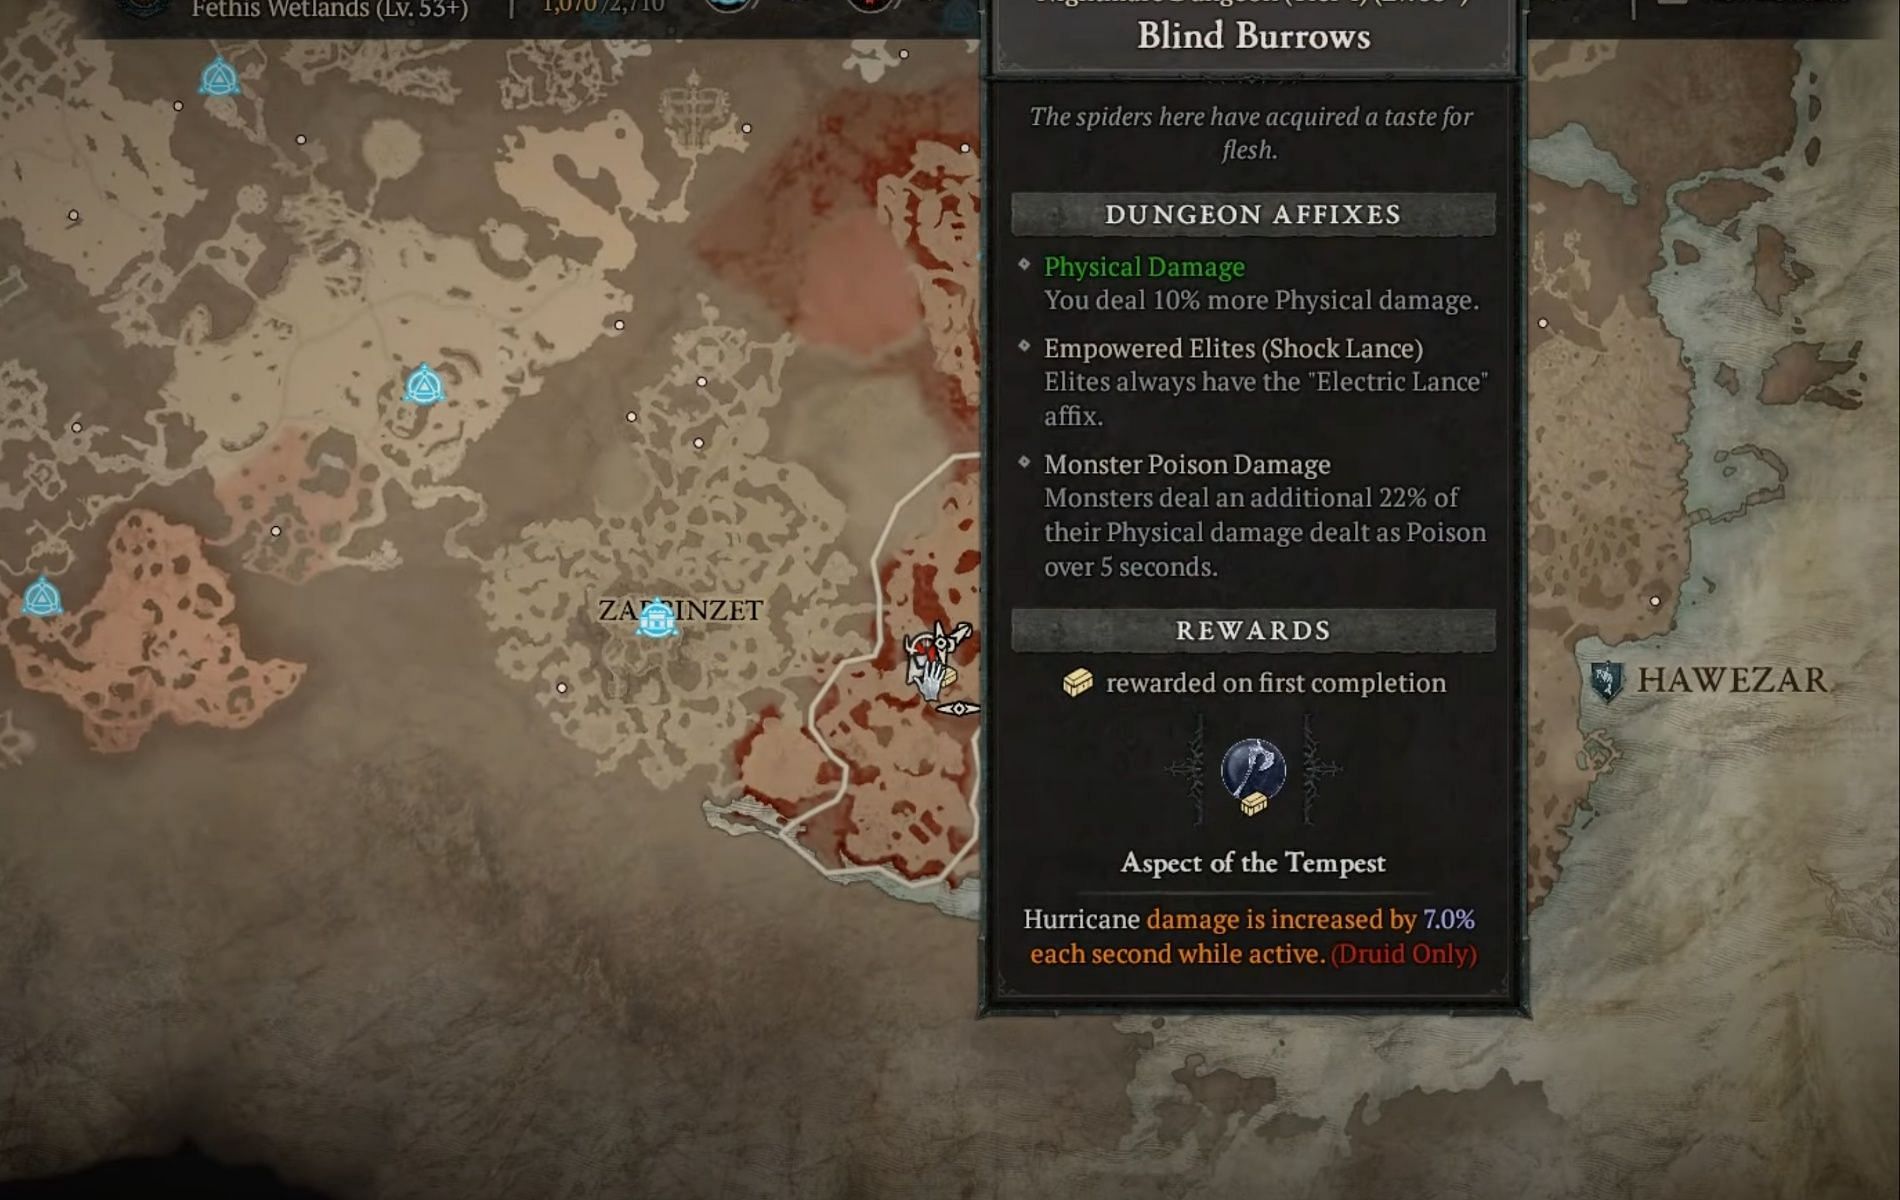 Blind Burrows in Diablo 4 (Image via Blizzard)